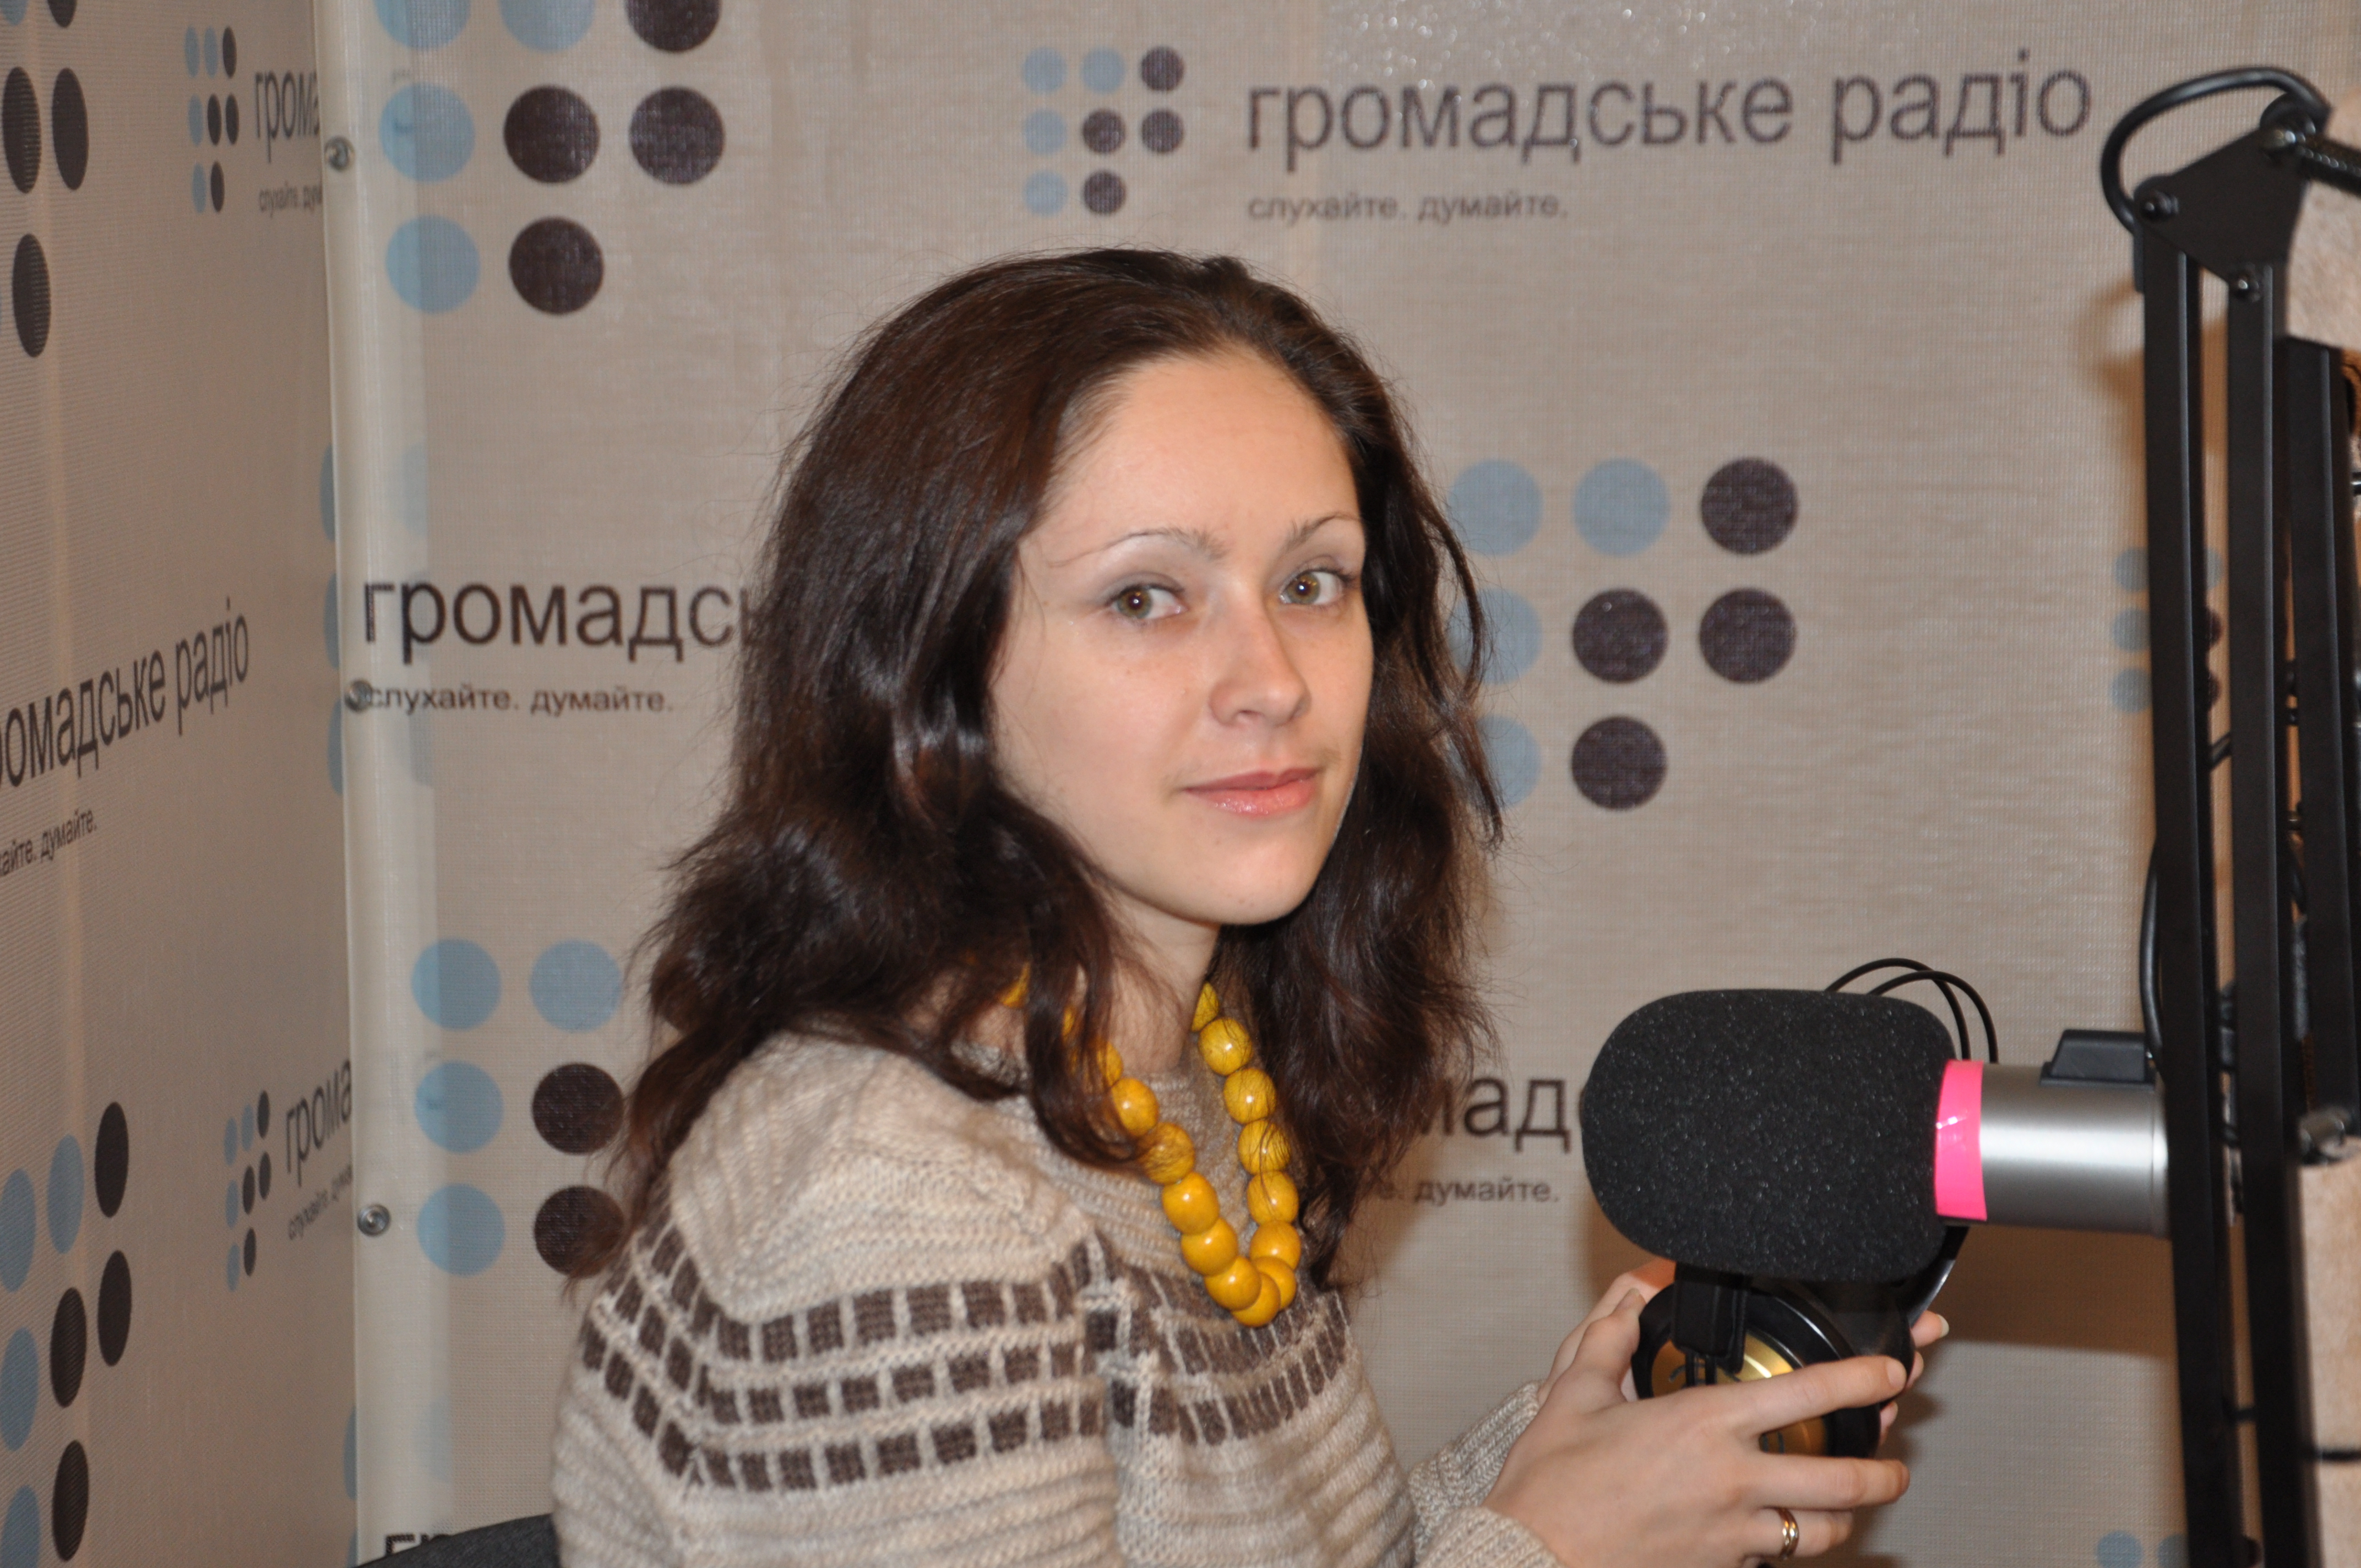 «Донбасс старается говорить языком любви», — донецкая поэтесса